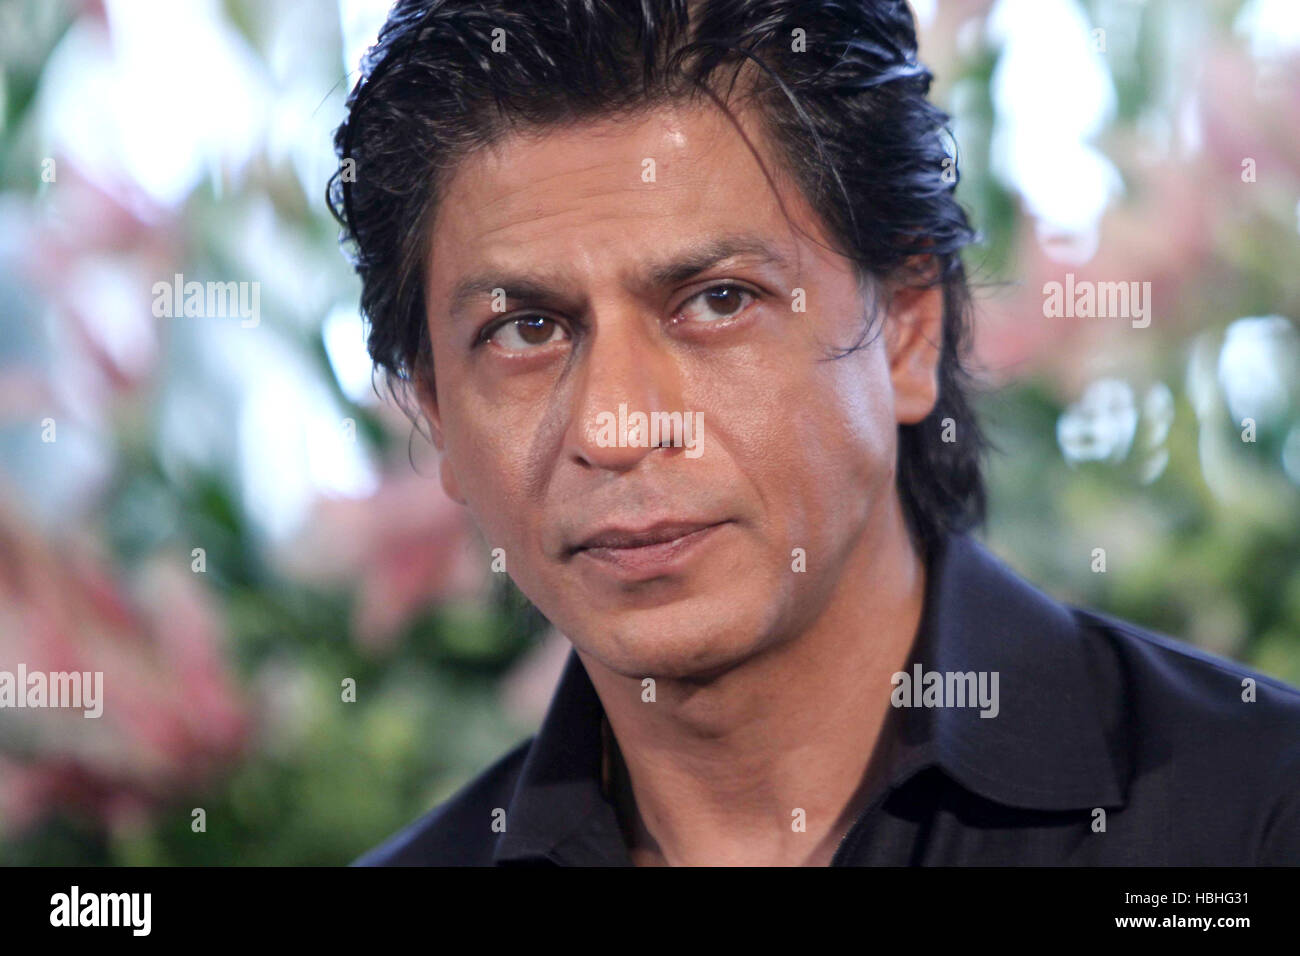 Shah Rukh Khan portrait, acteur indien de Bollywood proche du visage, Manrat, Bandra, Mumbai, Inde Banque D'Images